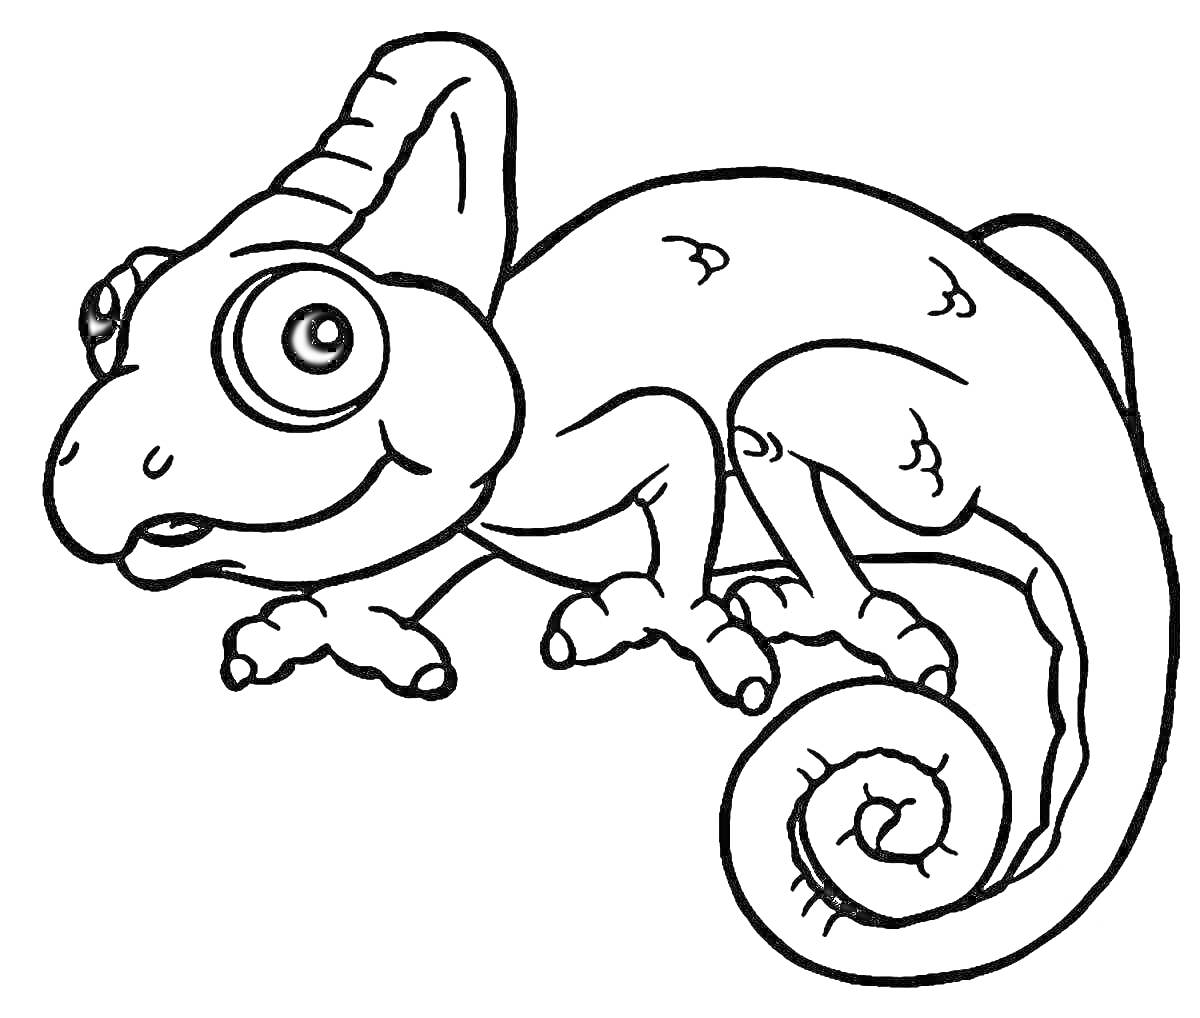 Раскраска Раскраска с изображением хамелеона с большими глазами и закрученным хвостом